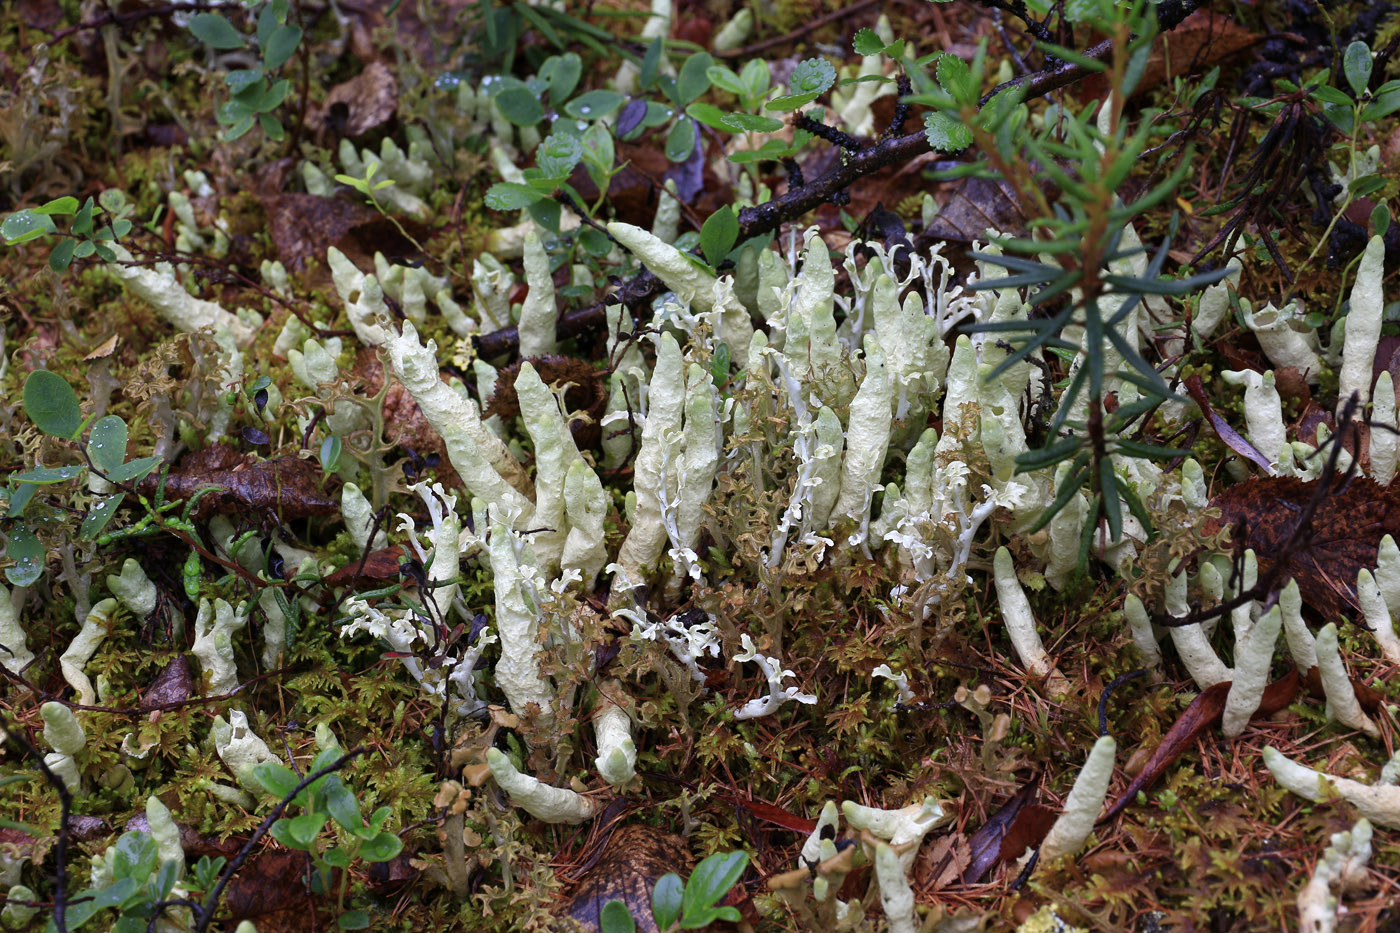 Image of genus Cetraria specimen.